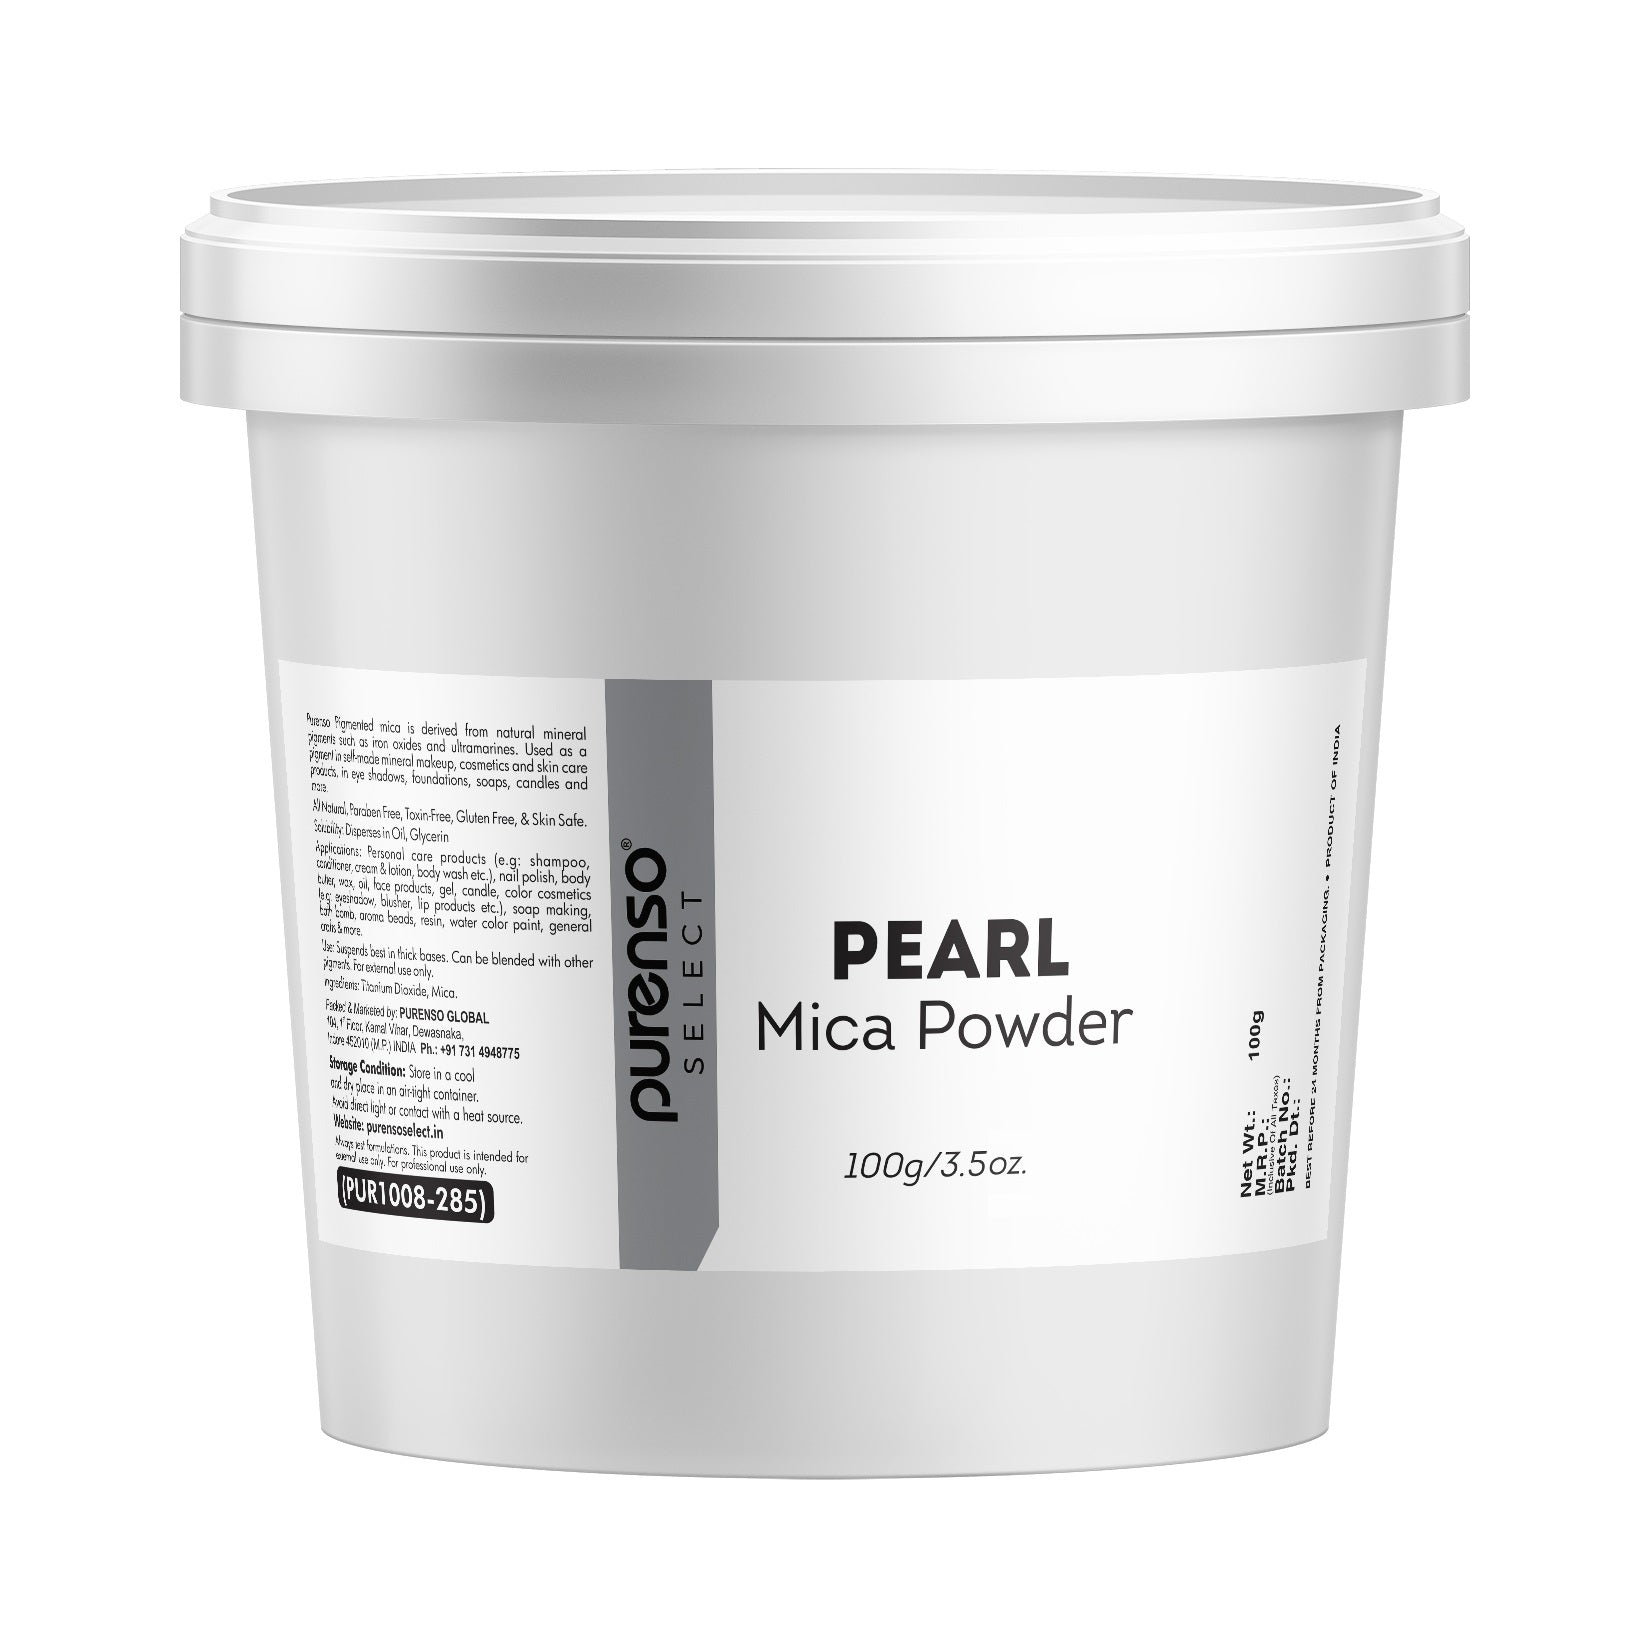 Pearl Mica Powder